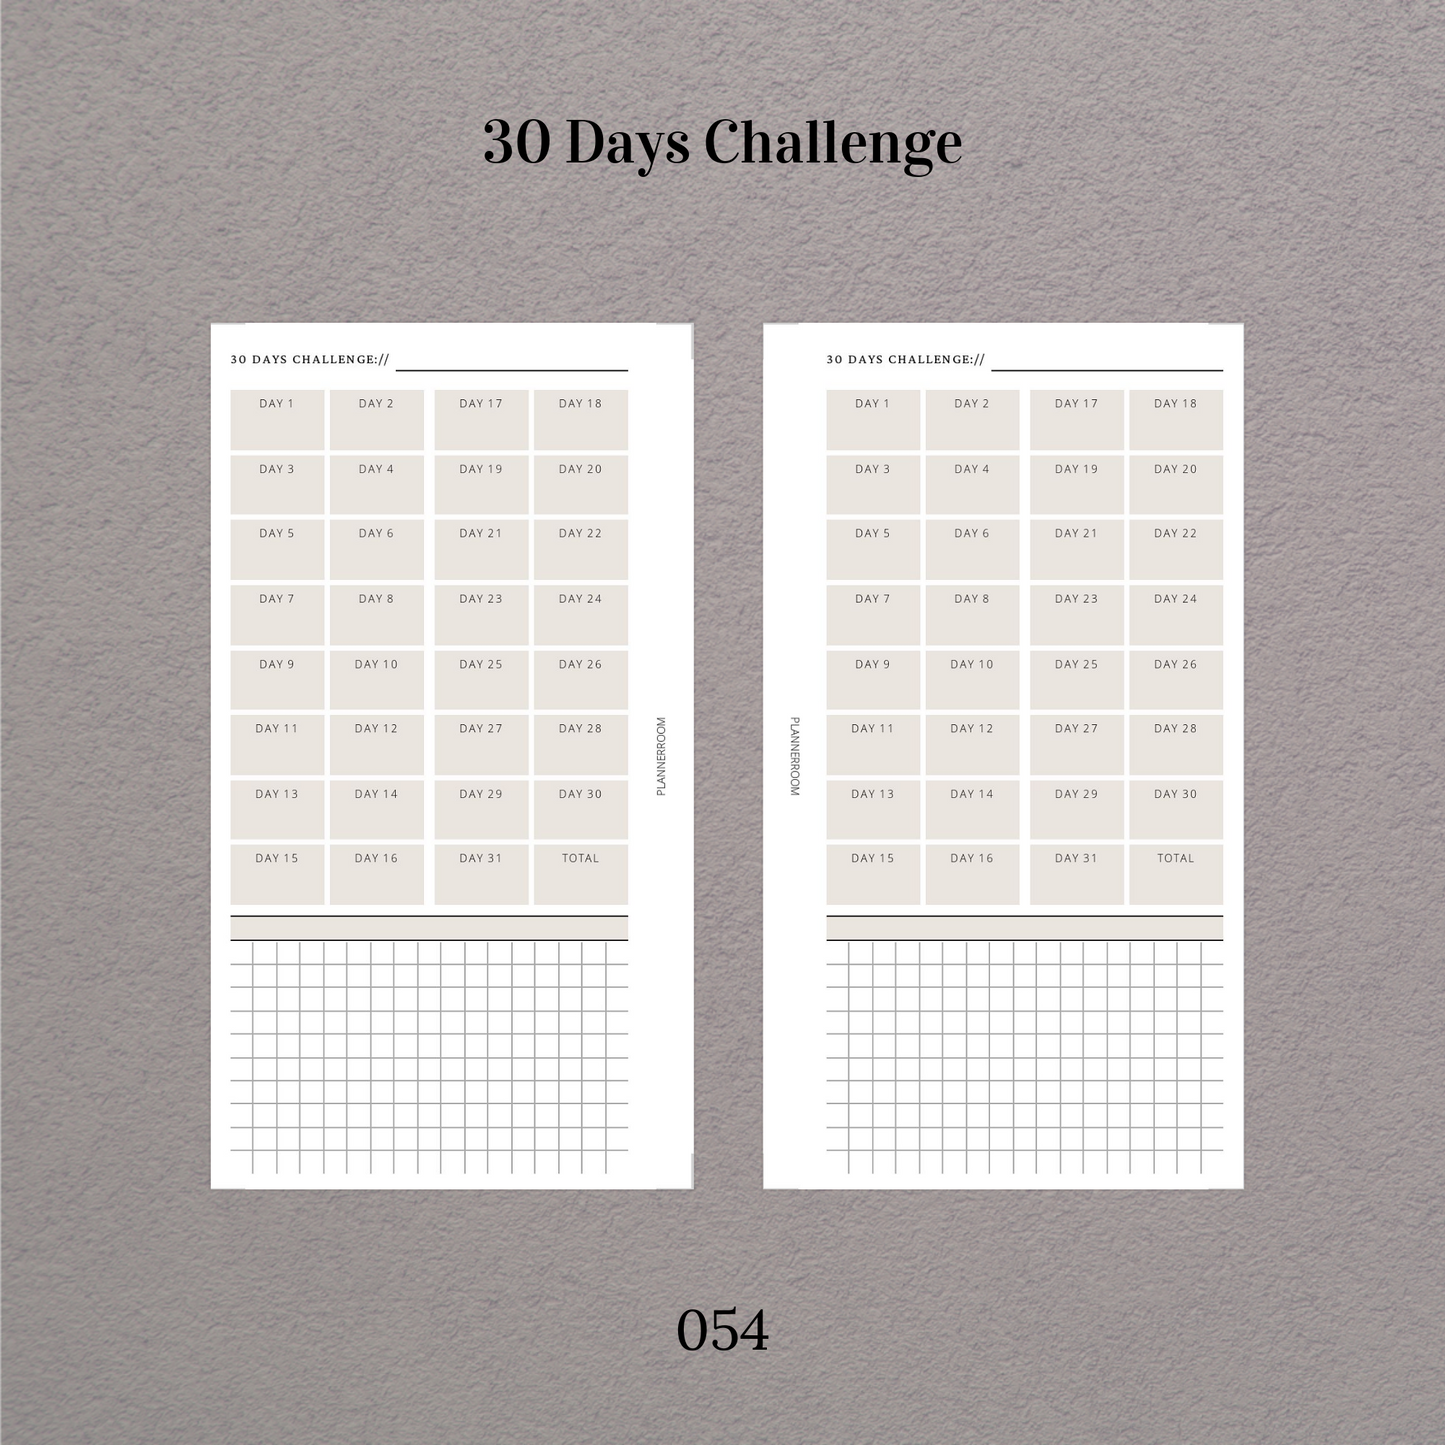 30 days challenge tracker - 054